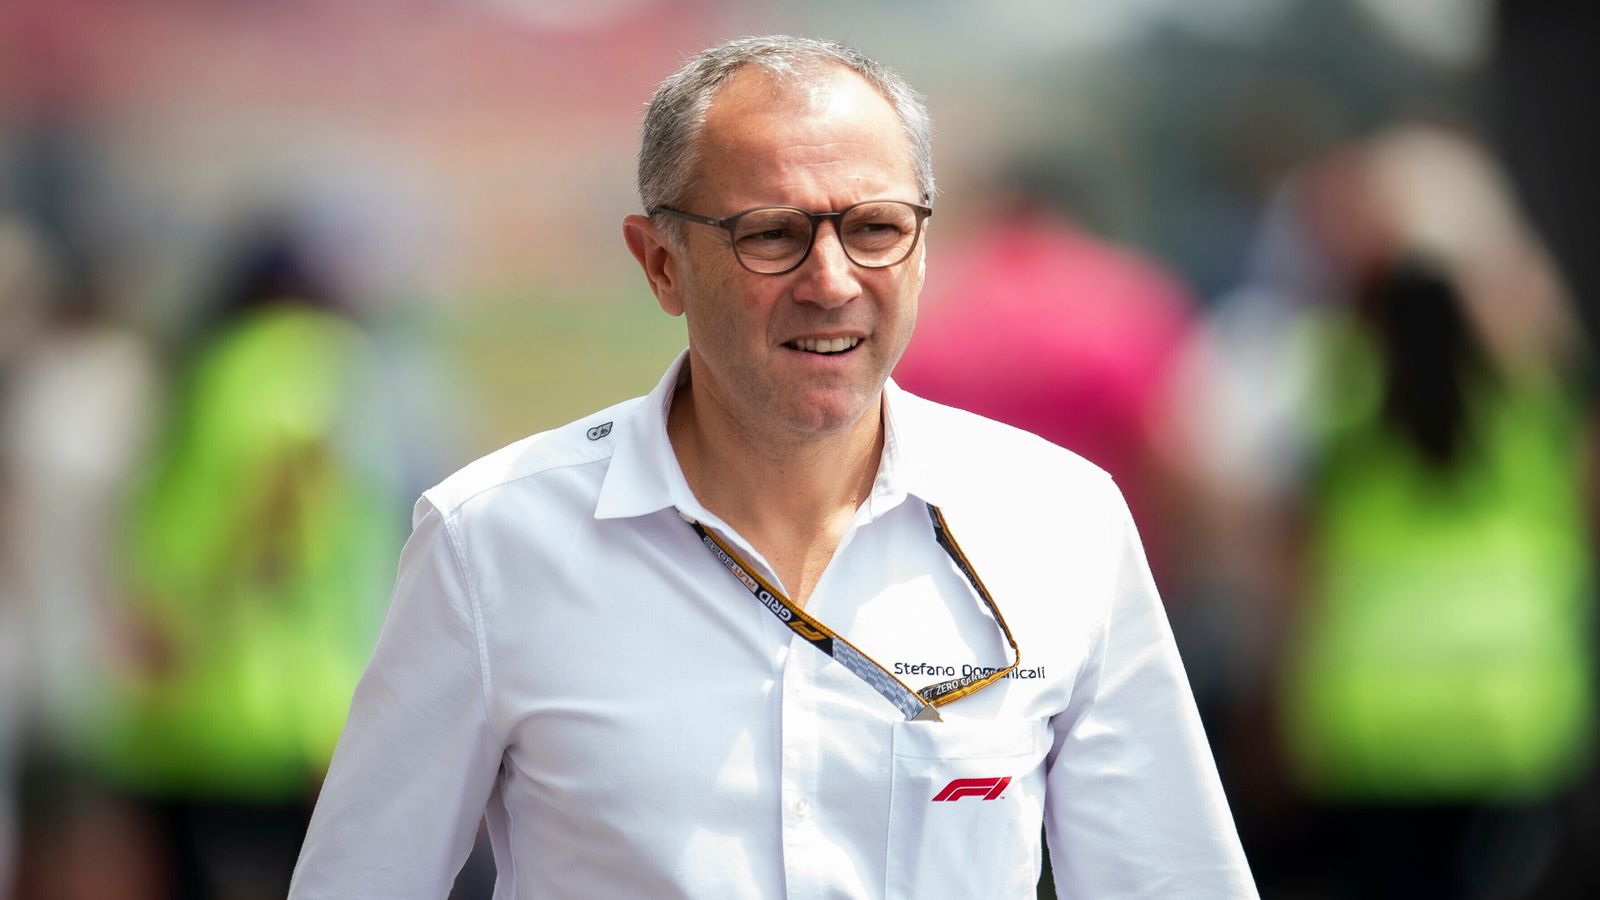 Stefano Domenicali afferma che le sessioni di prove libere di F1 rimangono ma sarebbe un “errore” non considerare i cambiamenti |  Notizie F1